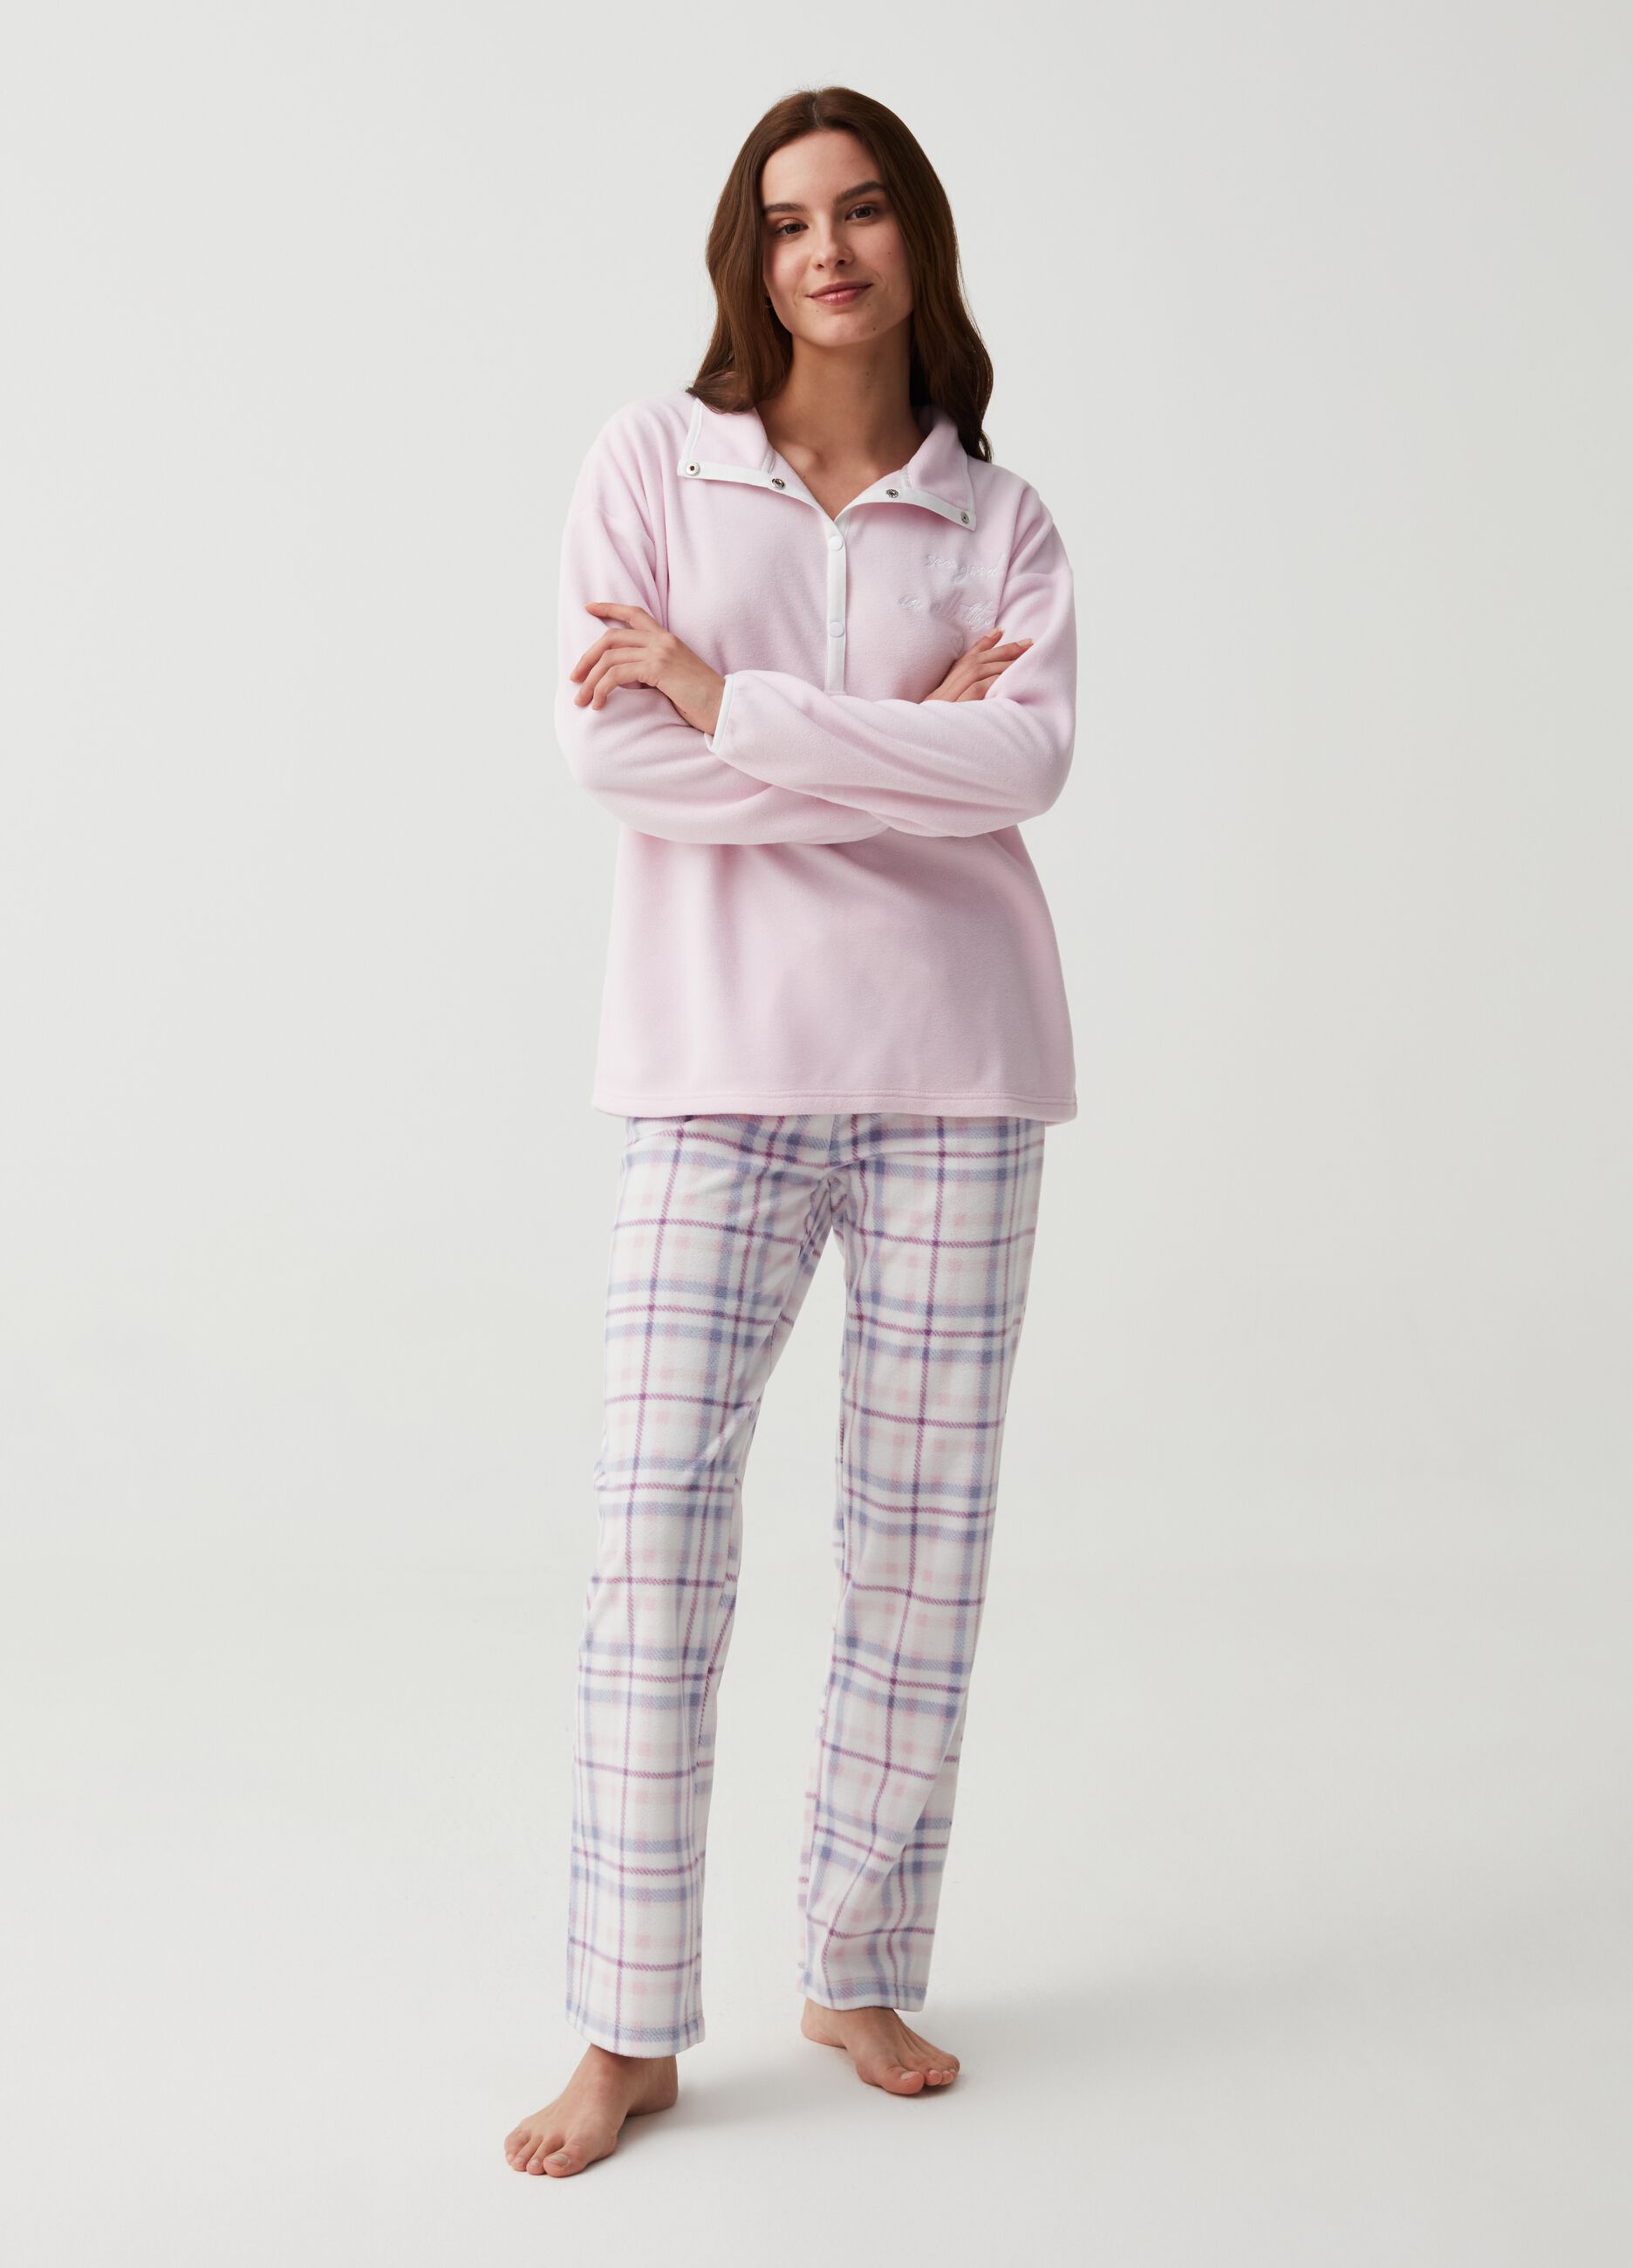 Pyjama bottoms in fleece with tartan pattern